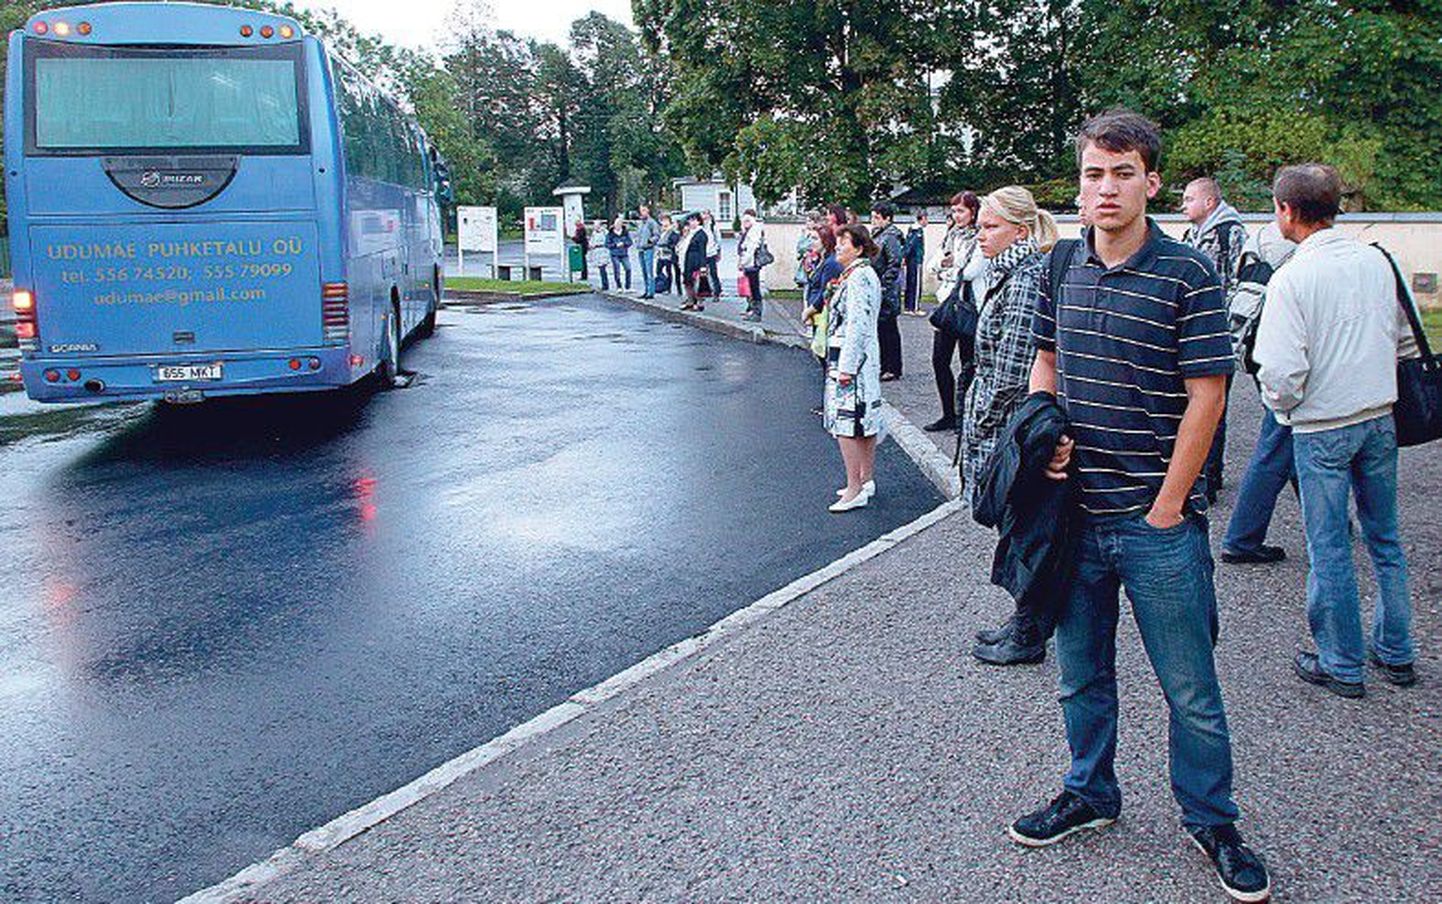 Десятки желающих добраться до столицы вчера утром вновь остались с носом — автобус уехал, а они в него не поместились. Придется ждать следующего автобуса и надеяться на лучшее.